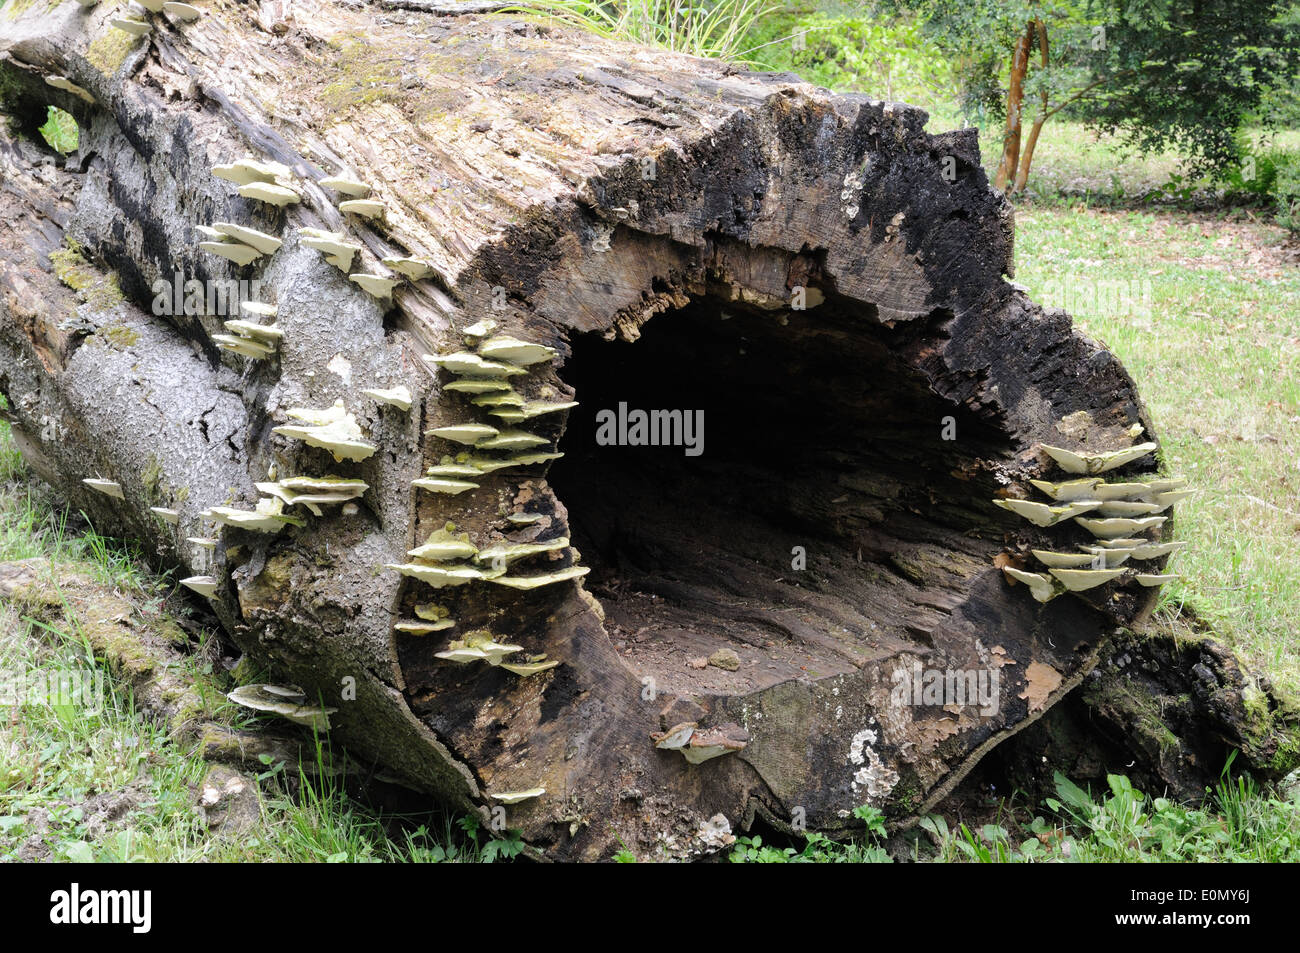 Halterung Pilze wachsen auf einem alten gefallenen Baumstamm Stockfoto